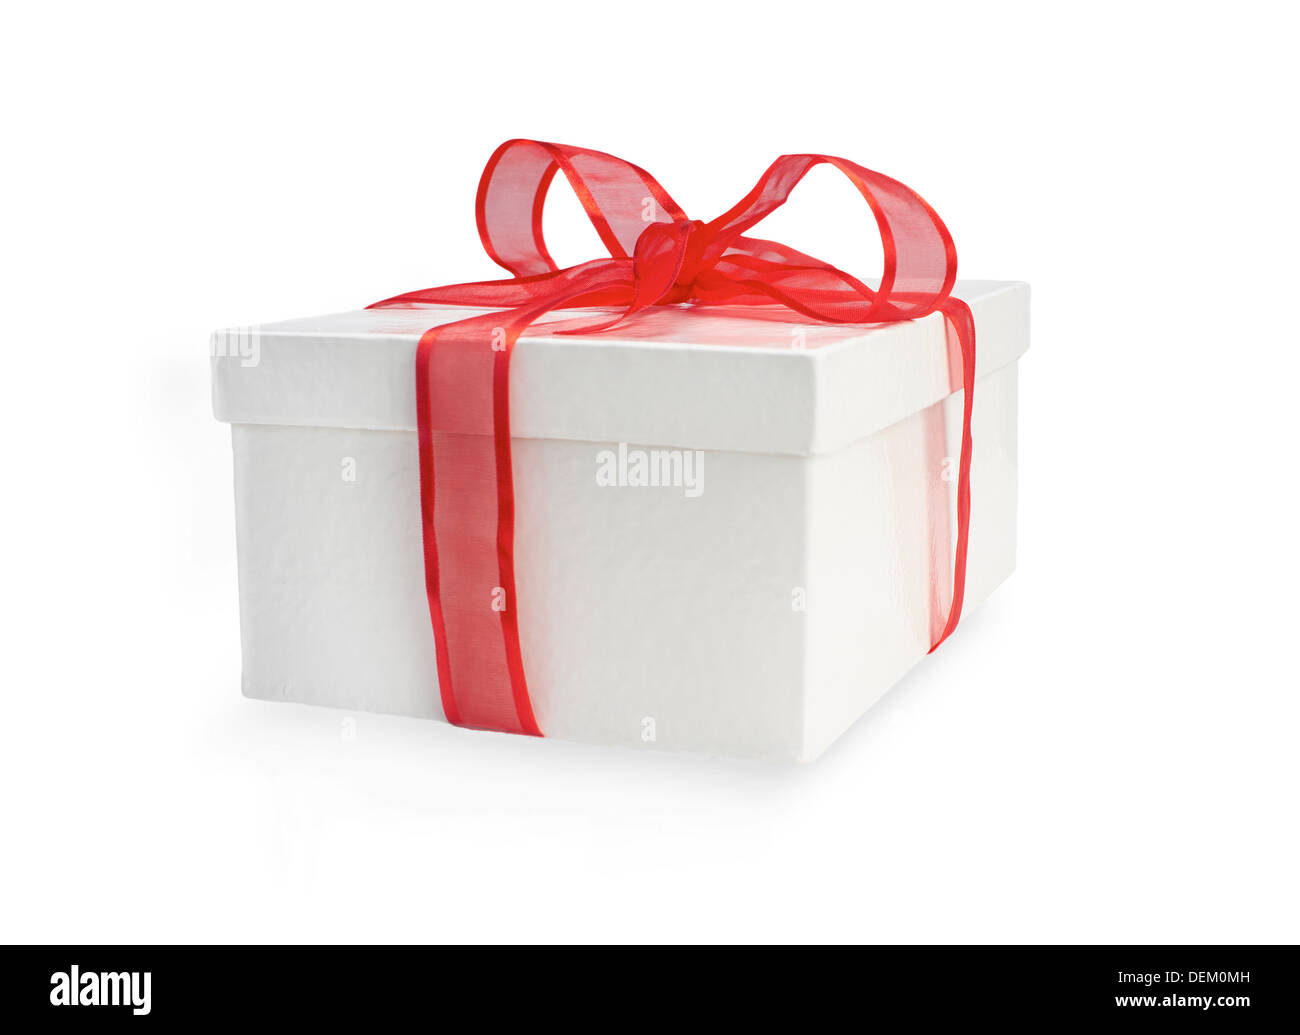 Bogen Sie eine verpackte Weihnachtsgeschenk mit einem farbenfrohen roten Band auf einem weißen Hintergrund. Stockfoto